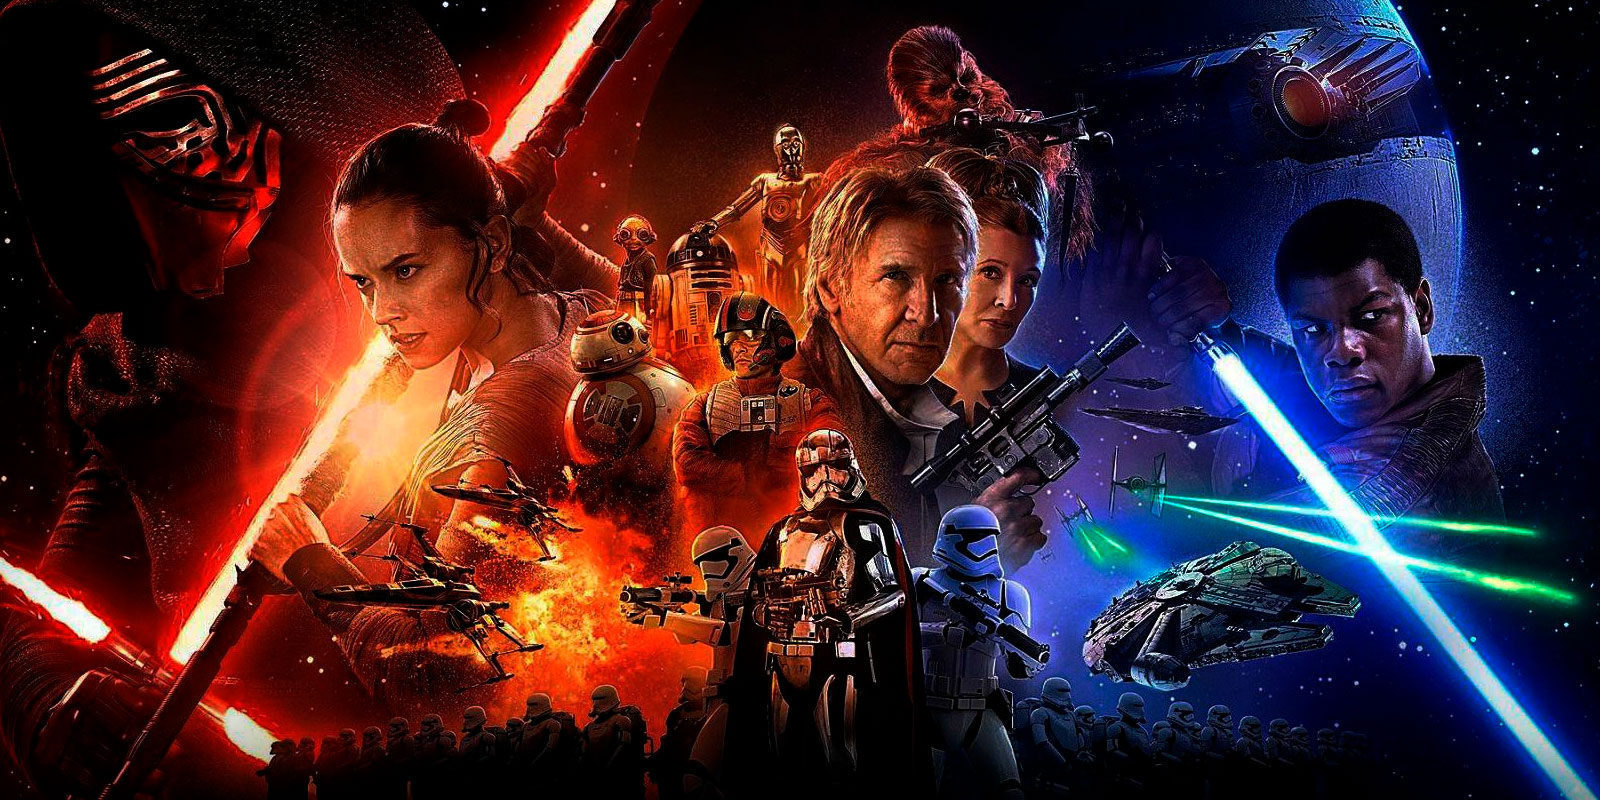 El próximo 11 de abril tendremos novedades sobre 'Star Wars' y su aniversario